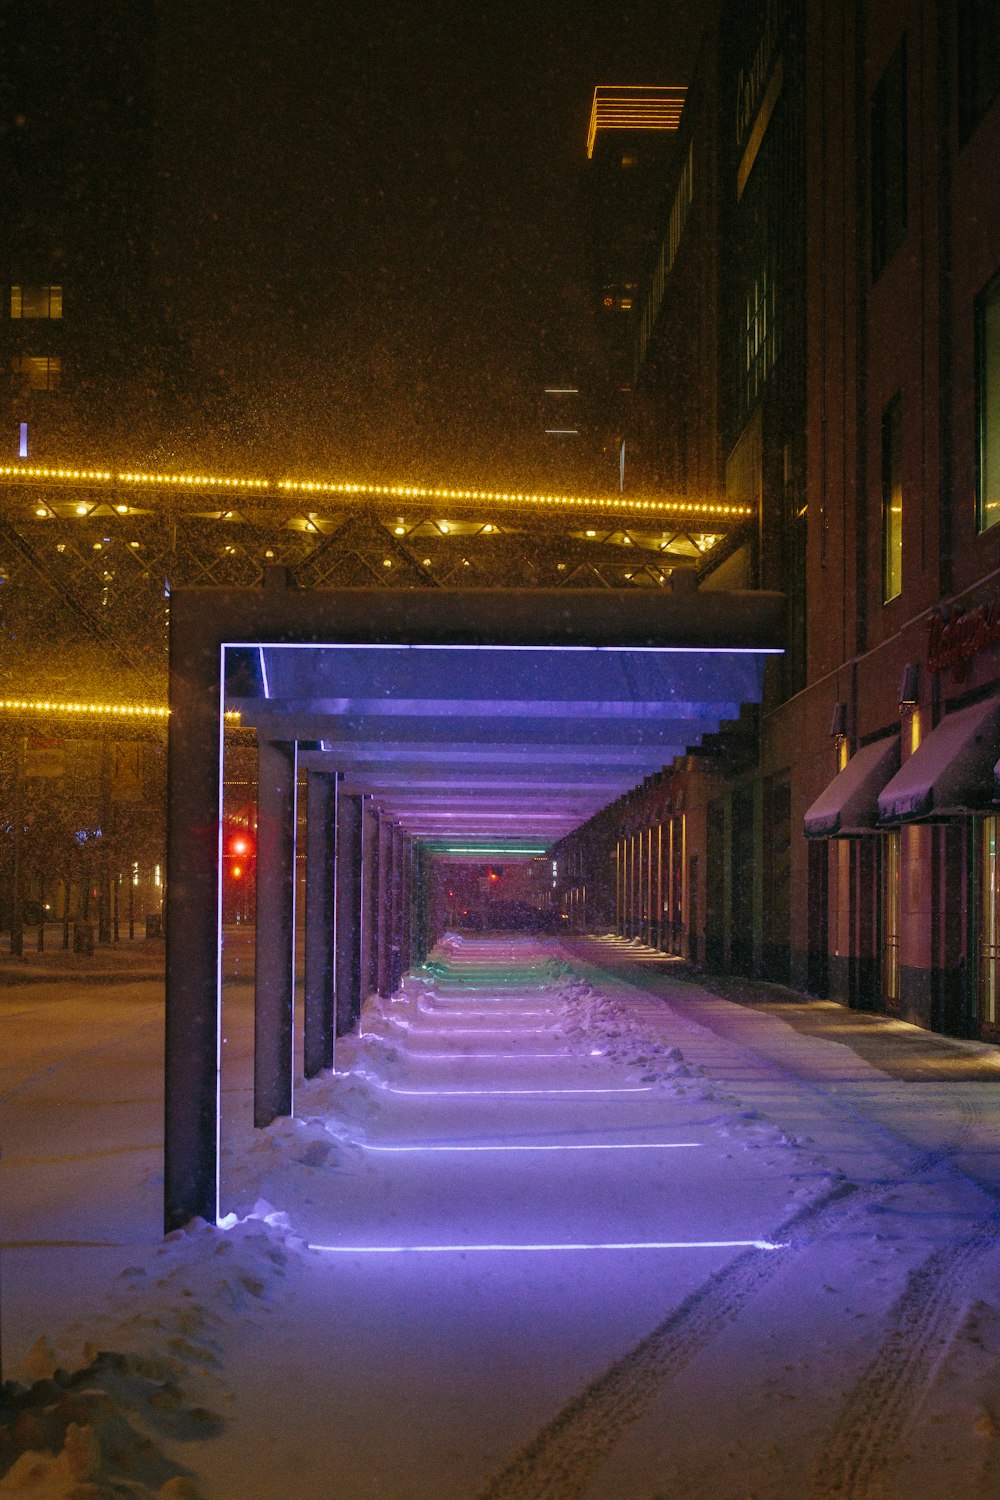 a long row of buildings on a snowy street